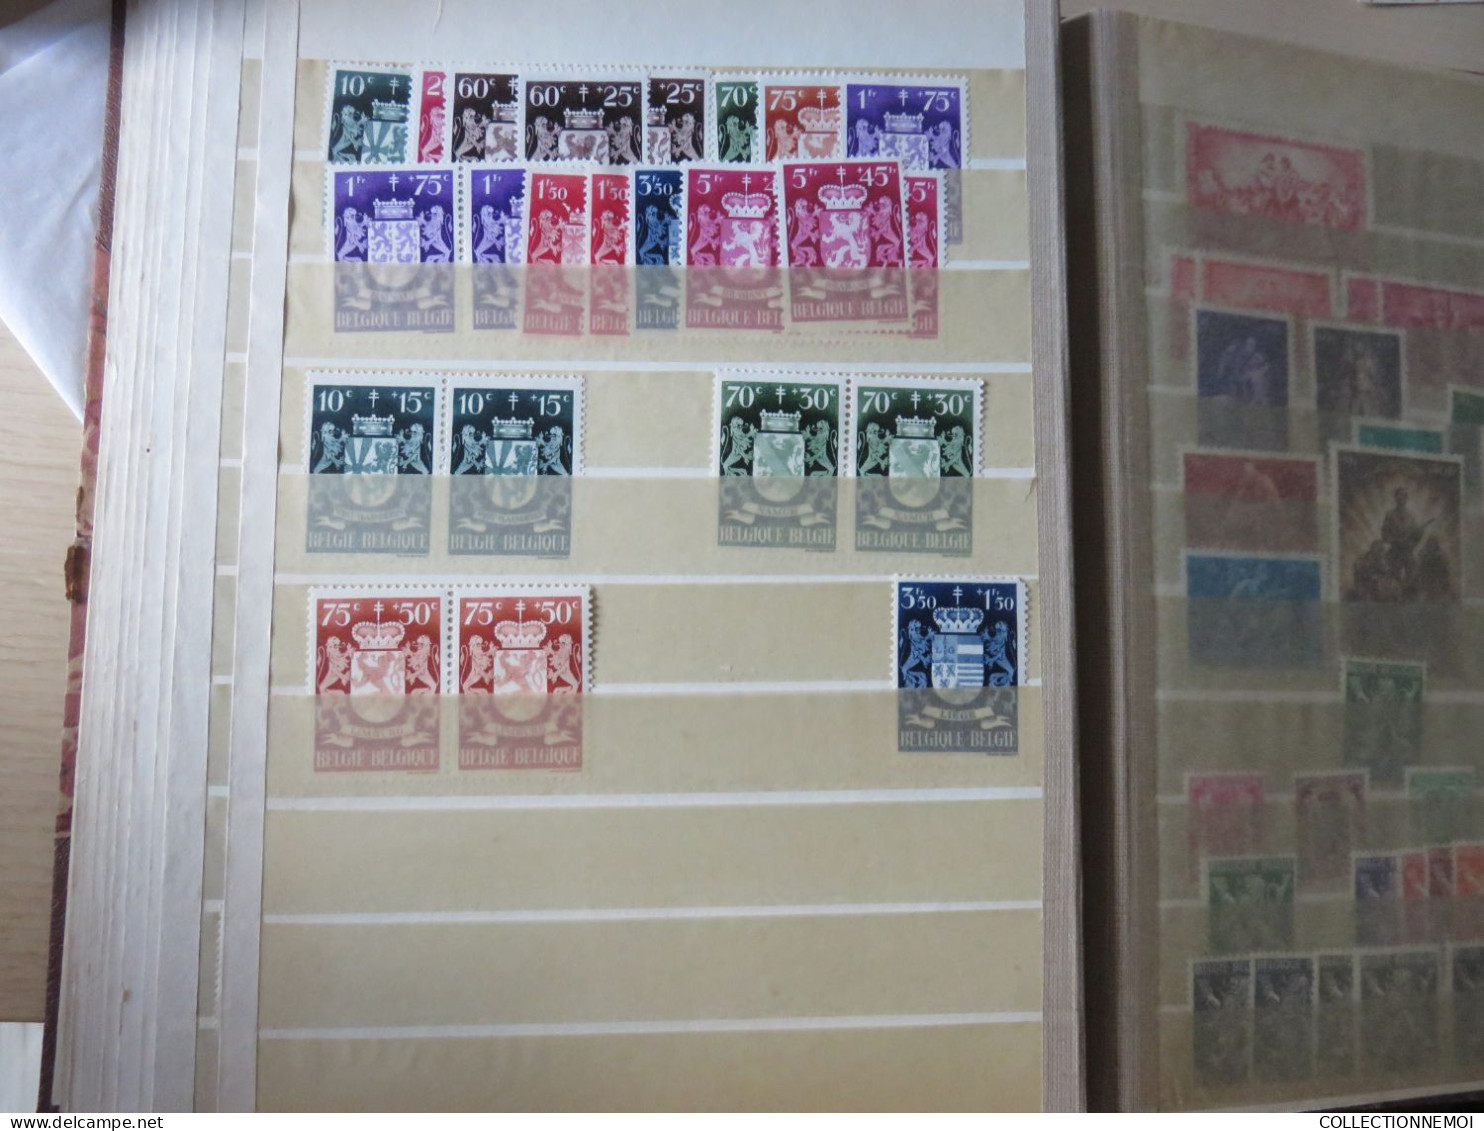 dans 4 classeurs des timbres collés ,,je montre tout ,,,,,,,,,,,,,,PRIX DERISOIRE ,,,,,,,,,,, timbres collés